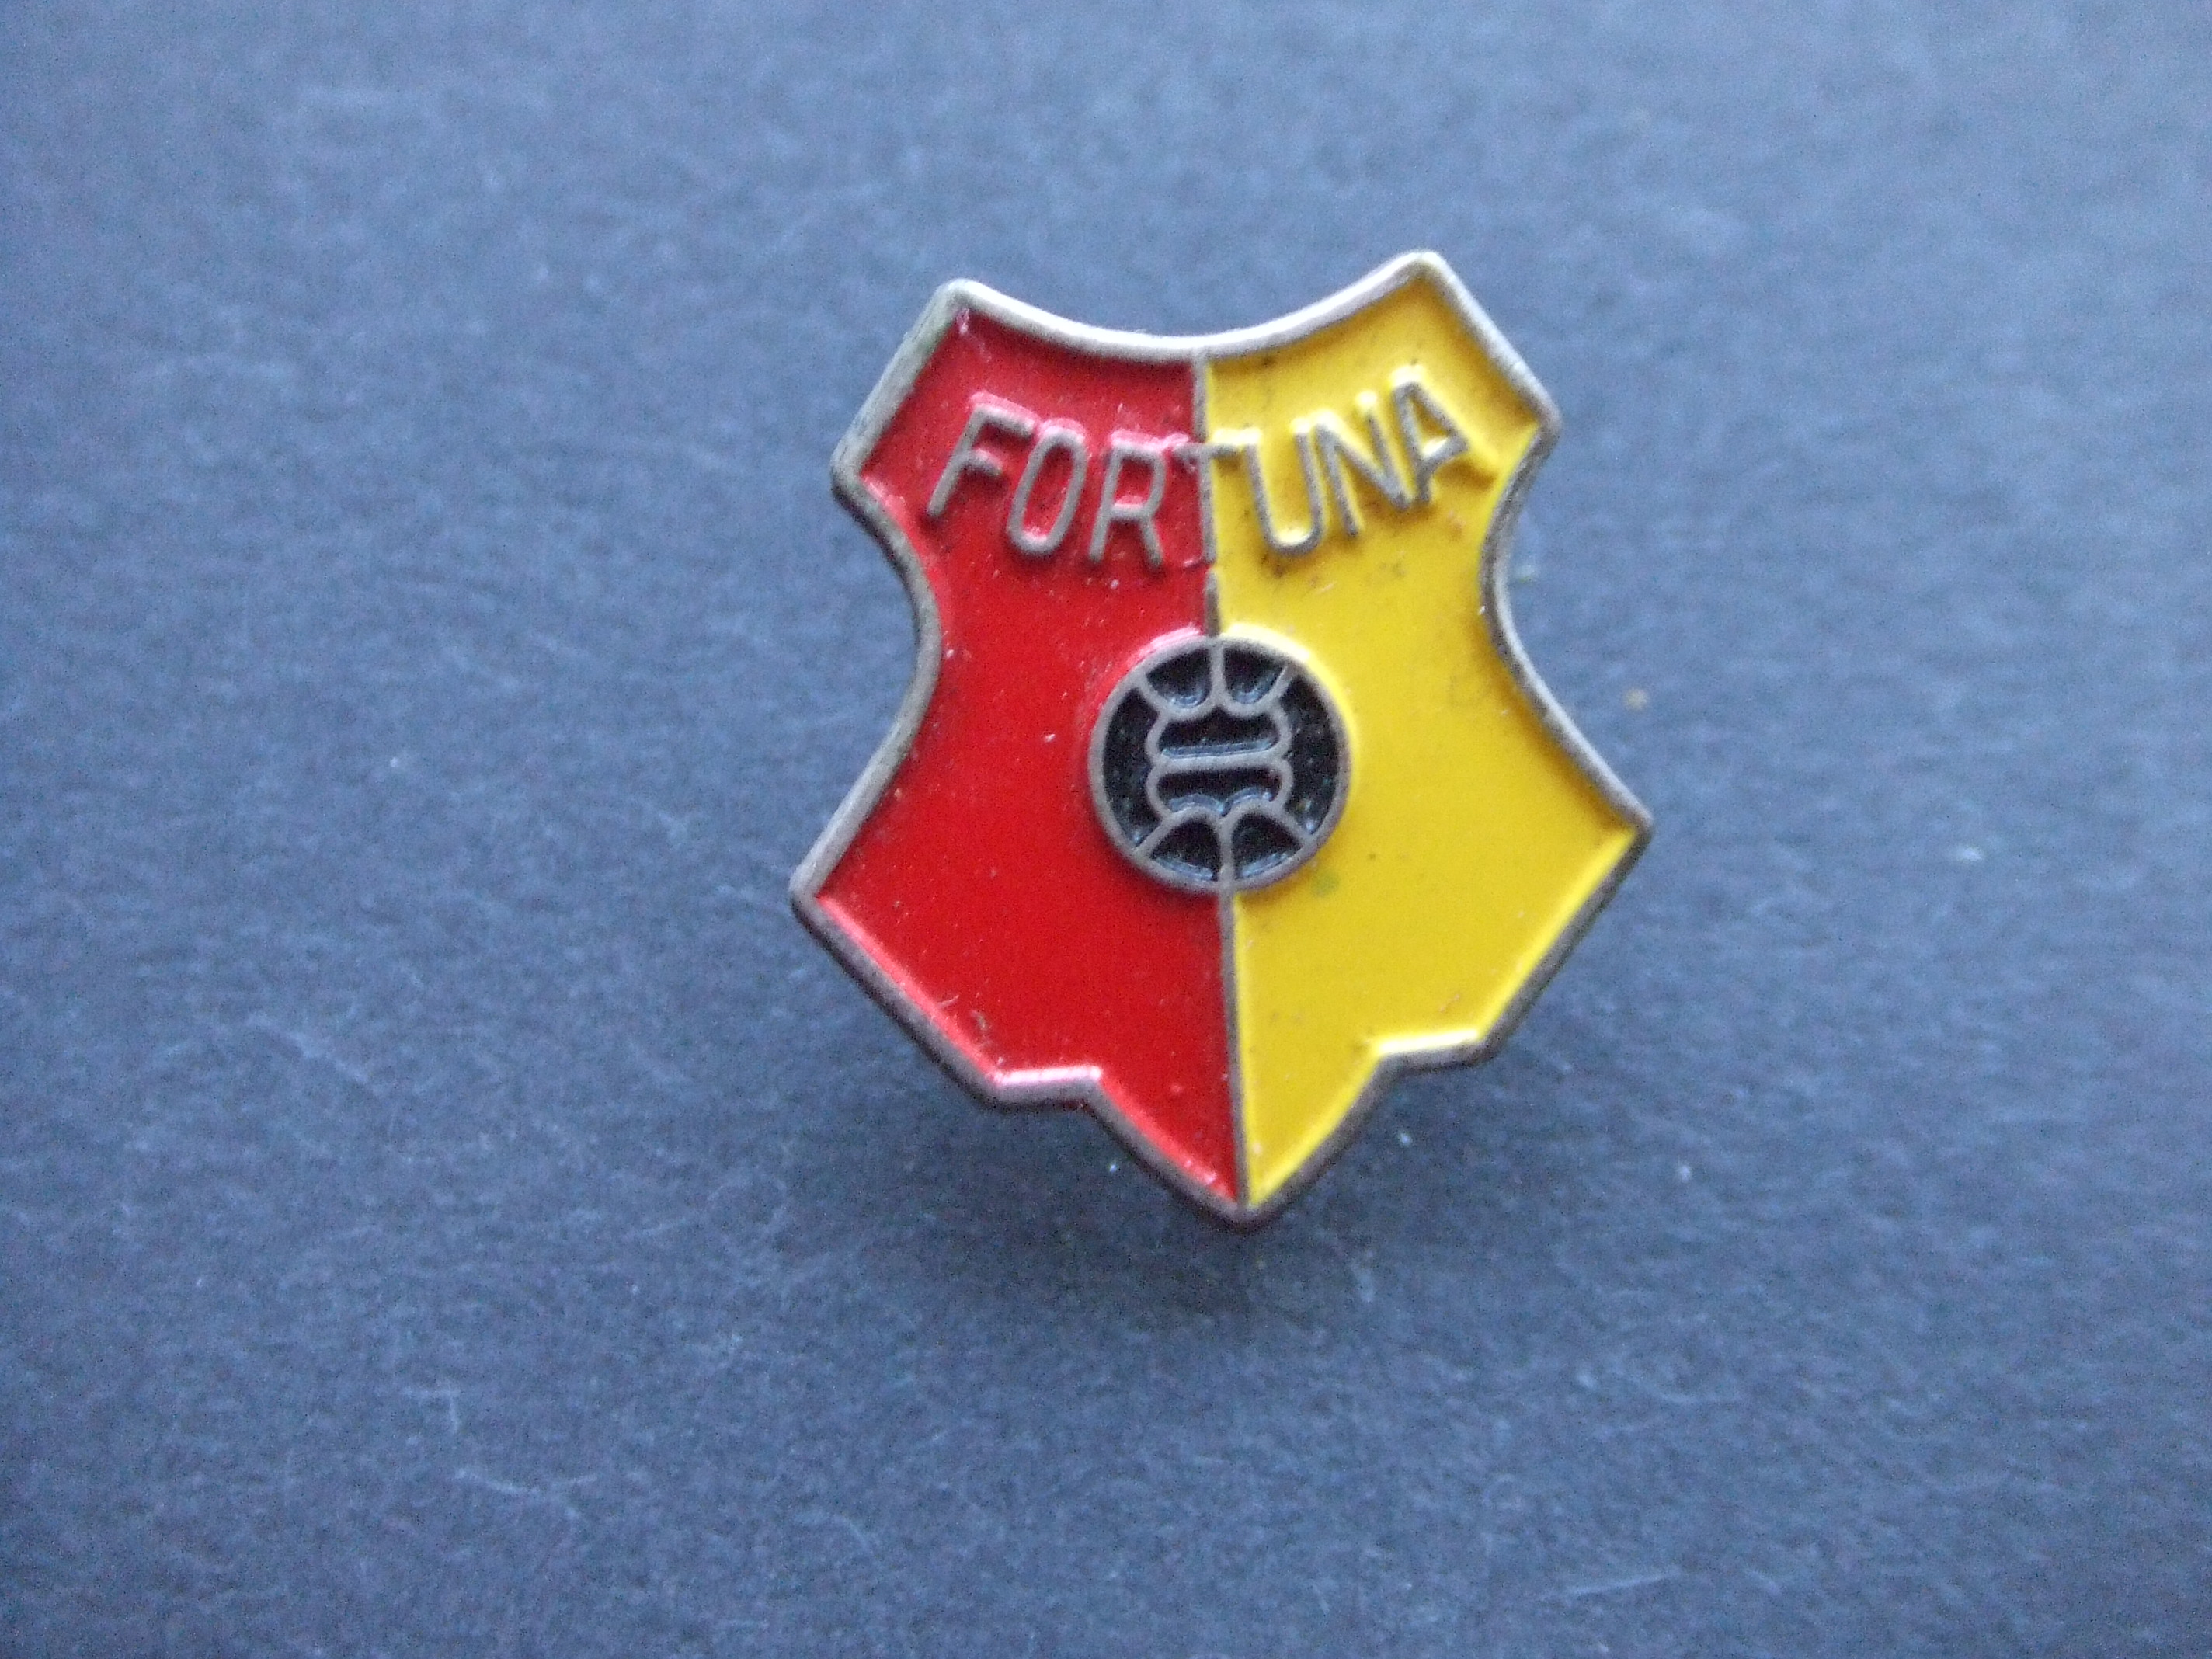 Fortuna Vlaardingen voetbalclub logo